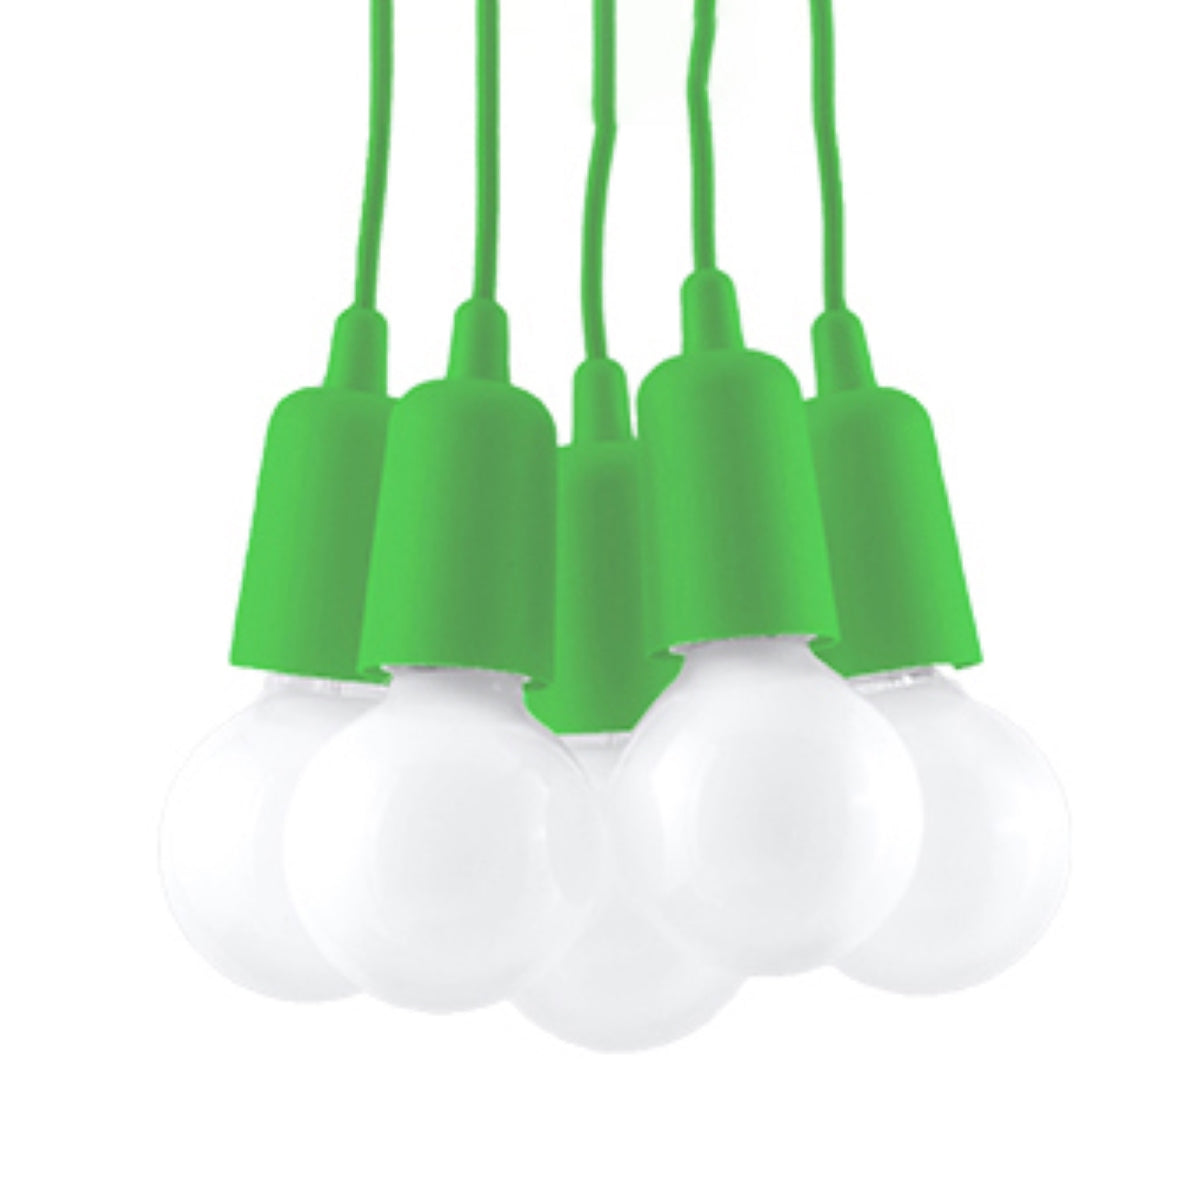 hanglamp-diego-5-groen